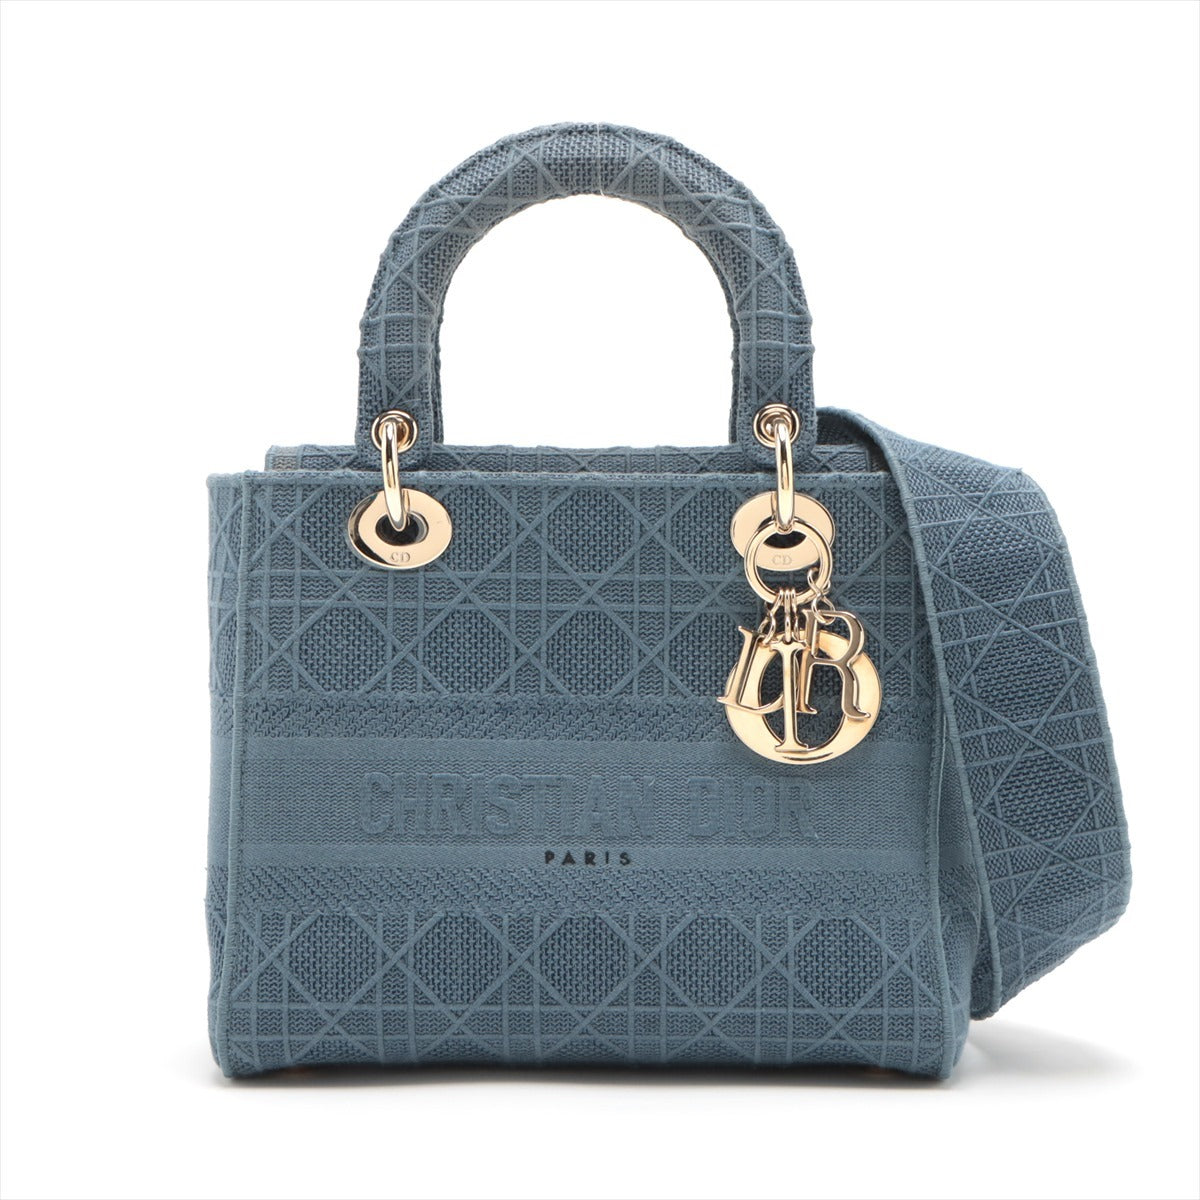 Christian Dior Lady Dior Cannage canvas 2 Way Handbag Blue